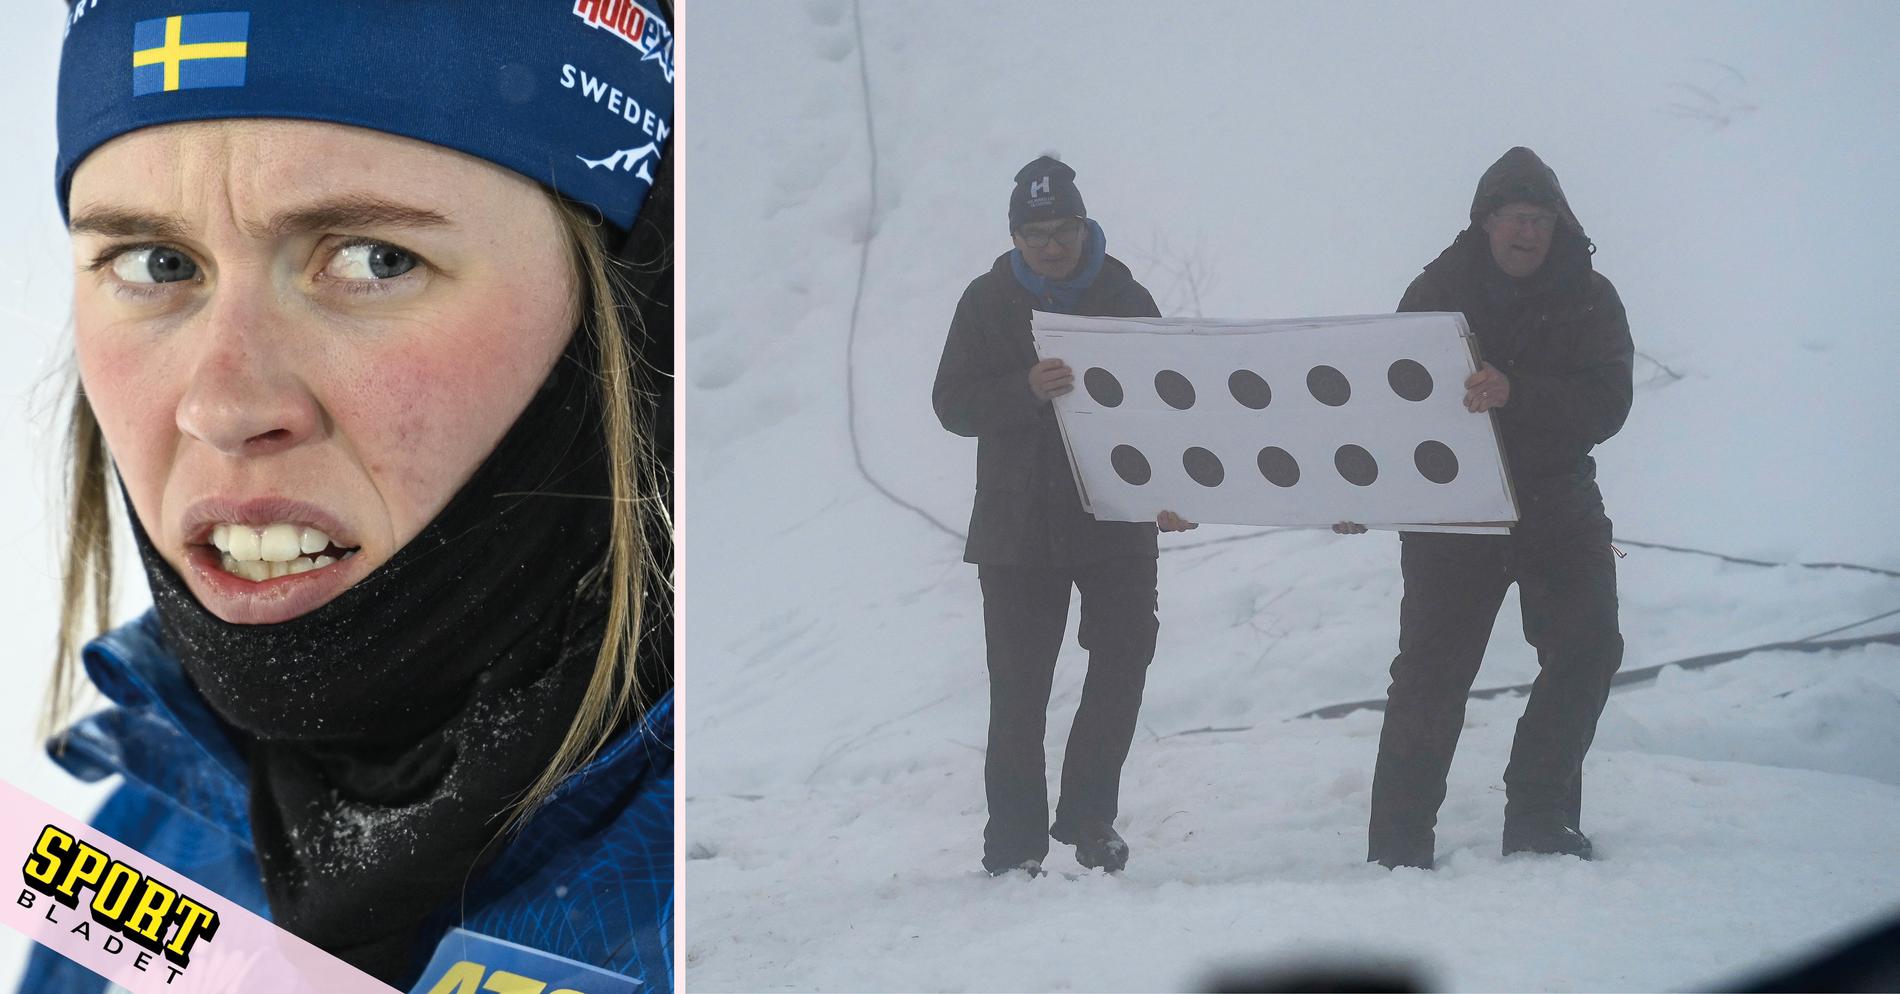 The women’s distance in biathlon in Holmenkollen cancelled